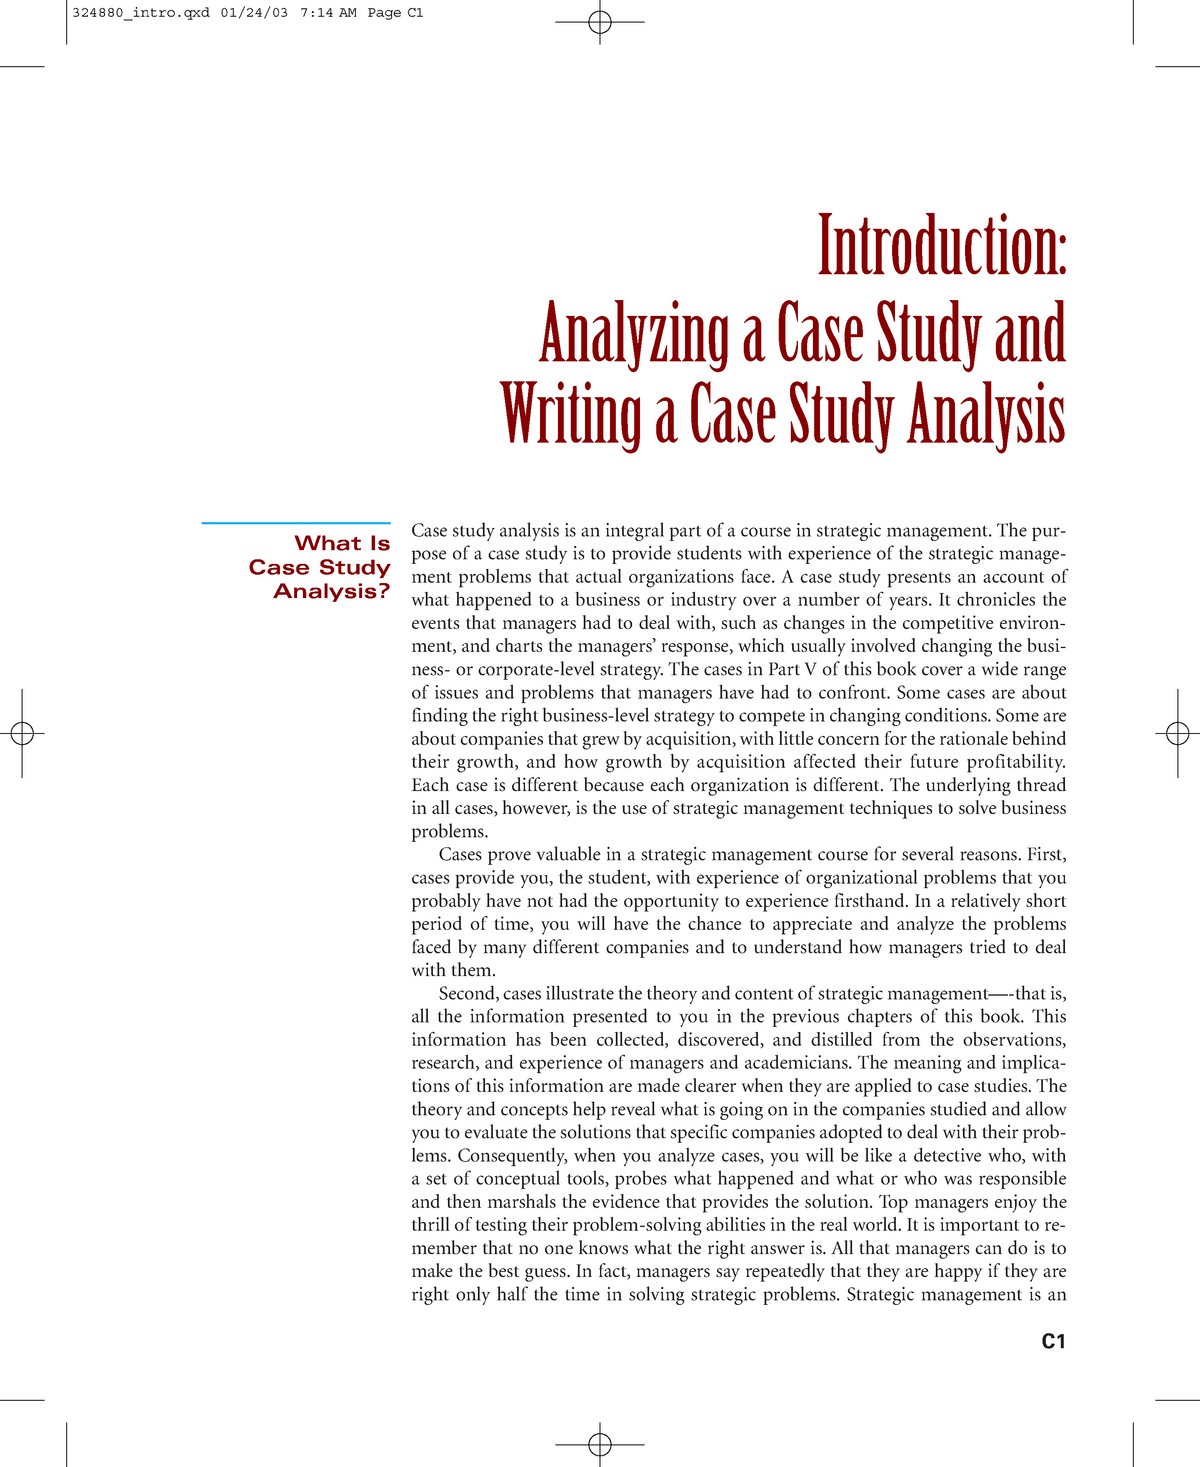 case study analysis case study analysis